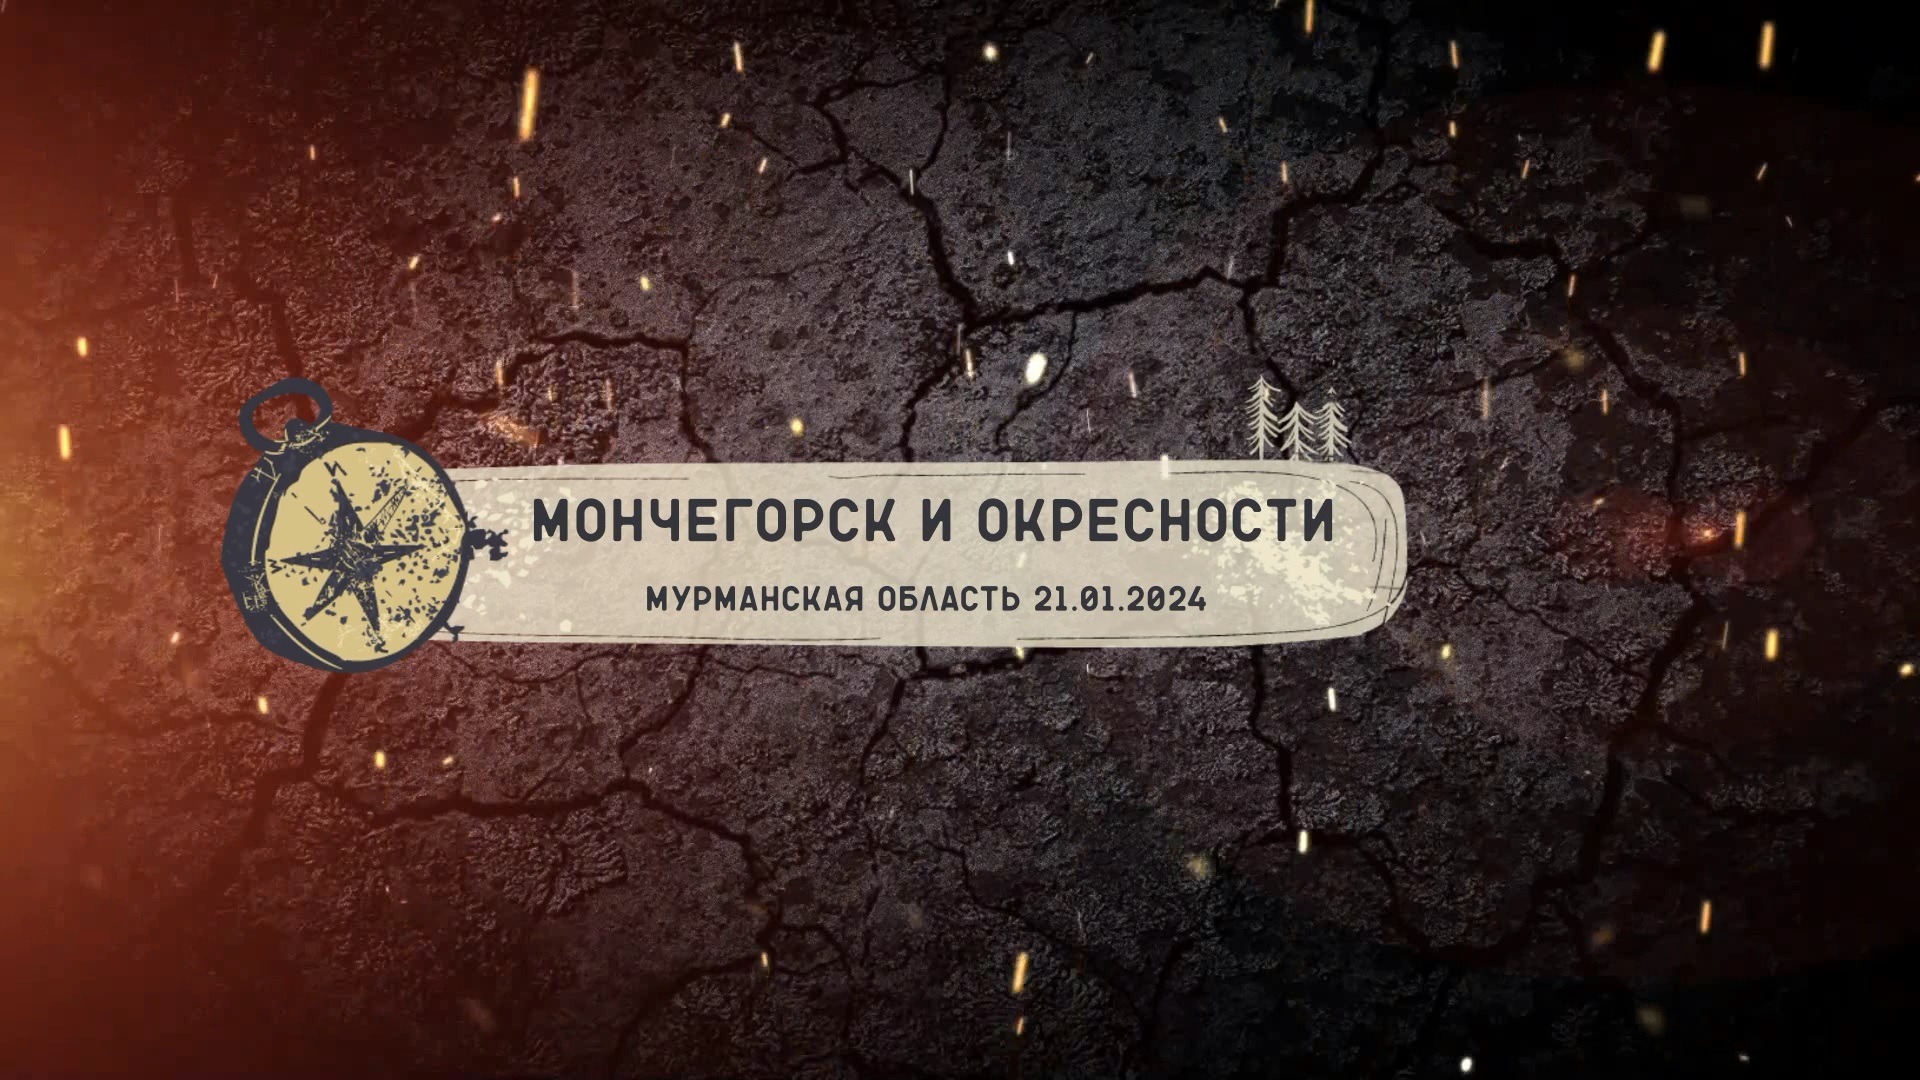 Мончегорск и окрестности. Мурманская область 21.01.2024.